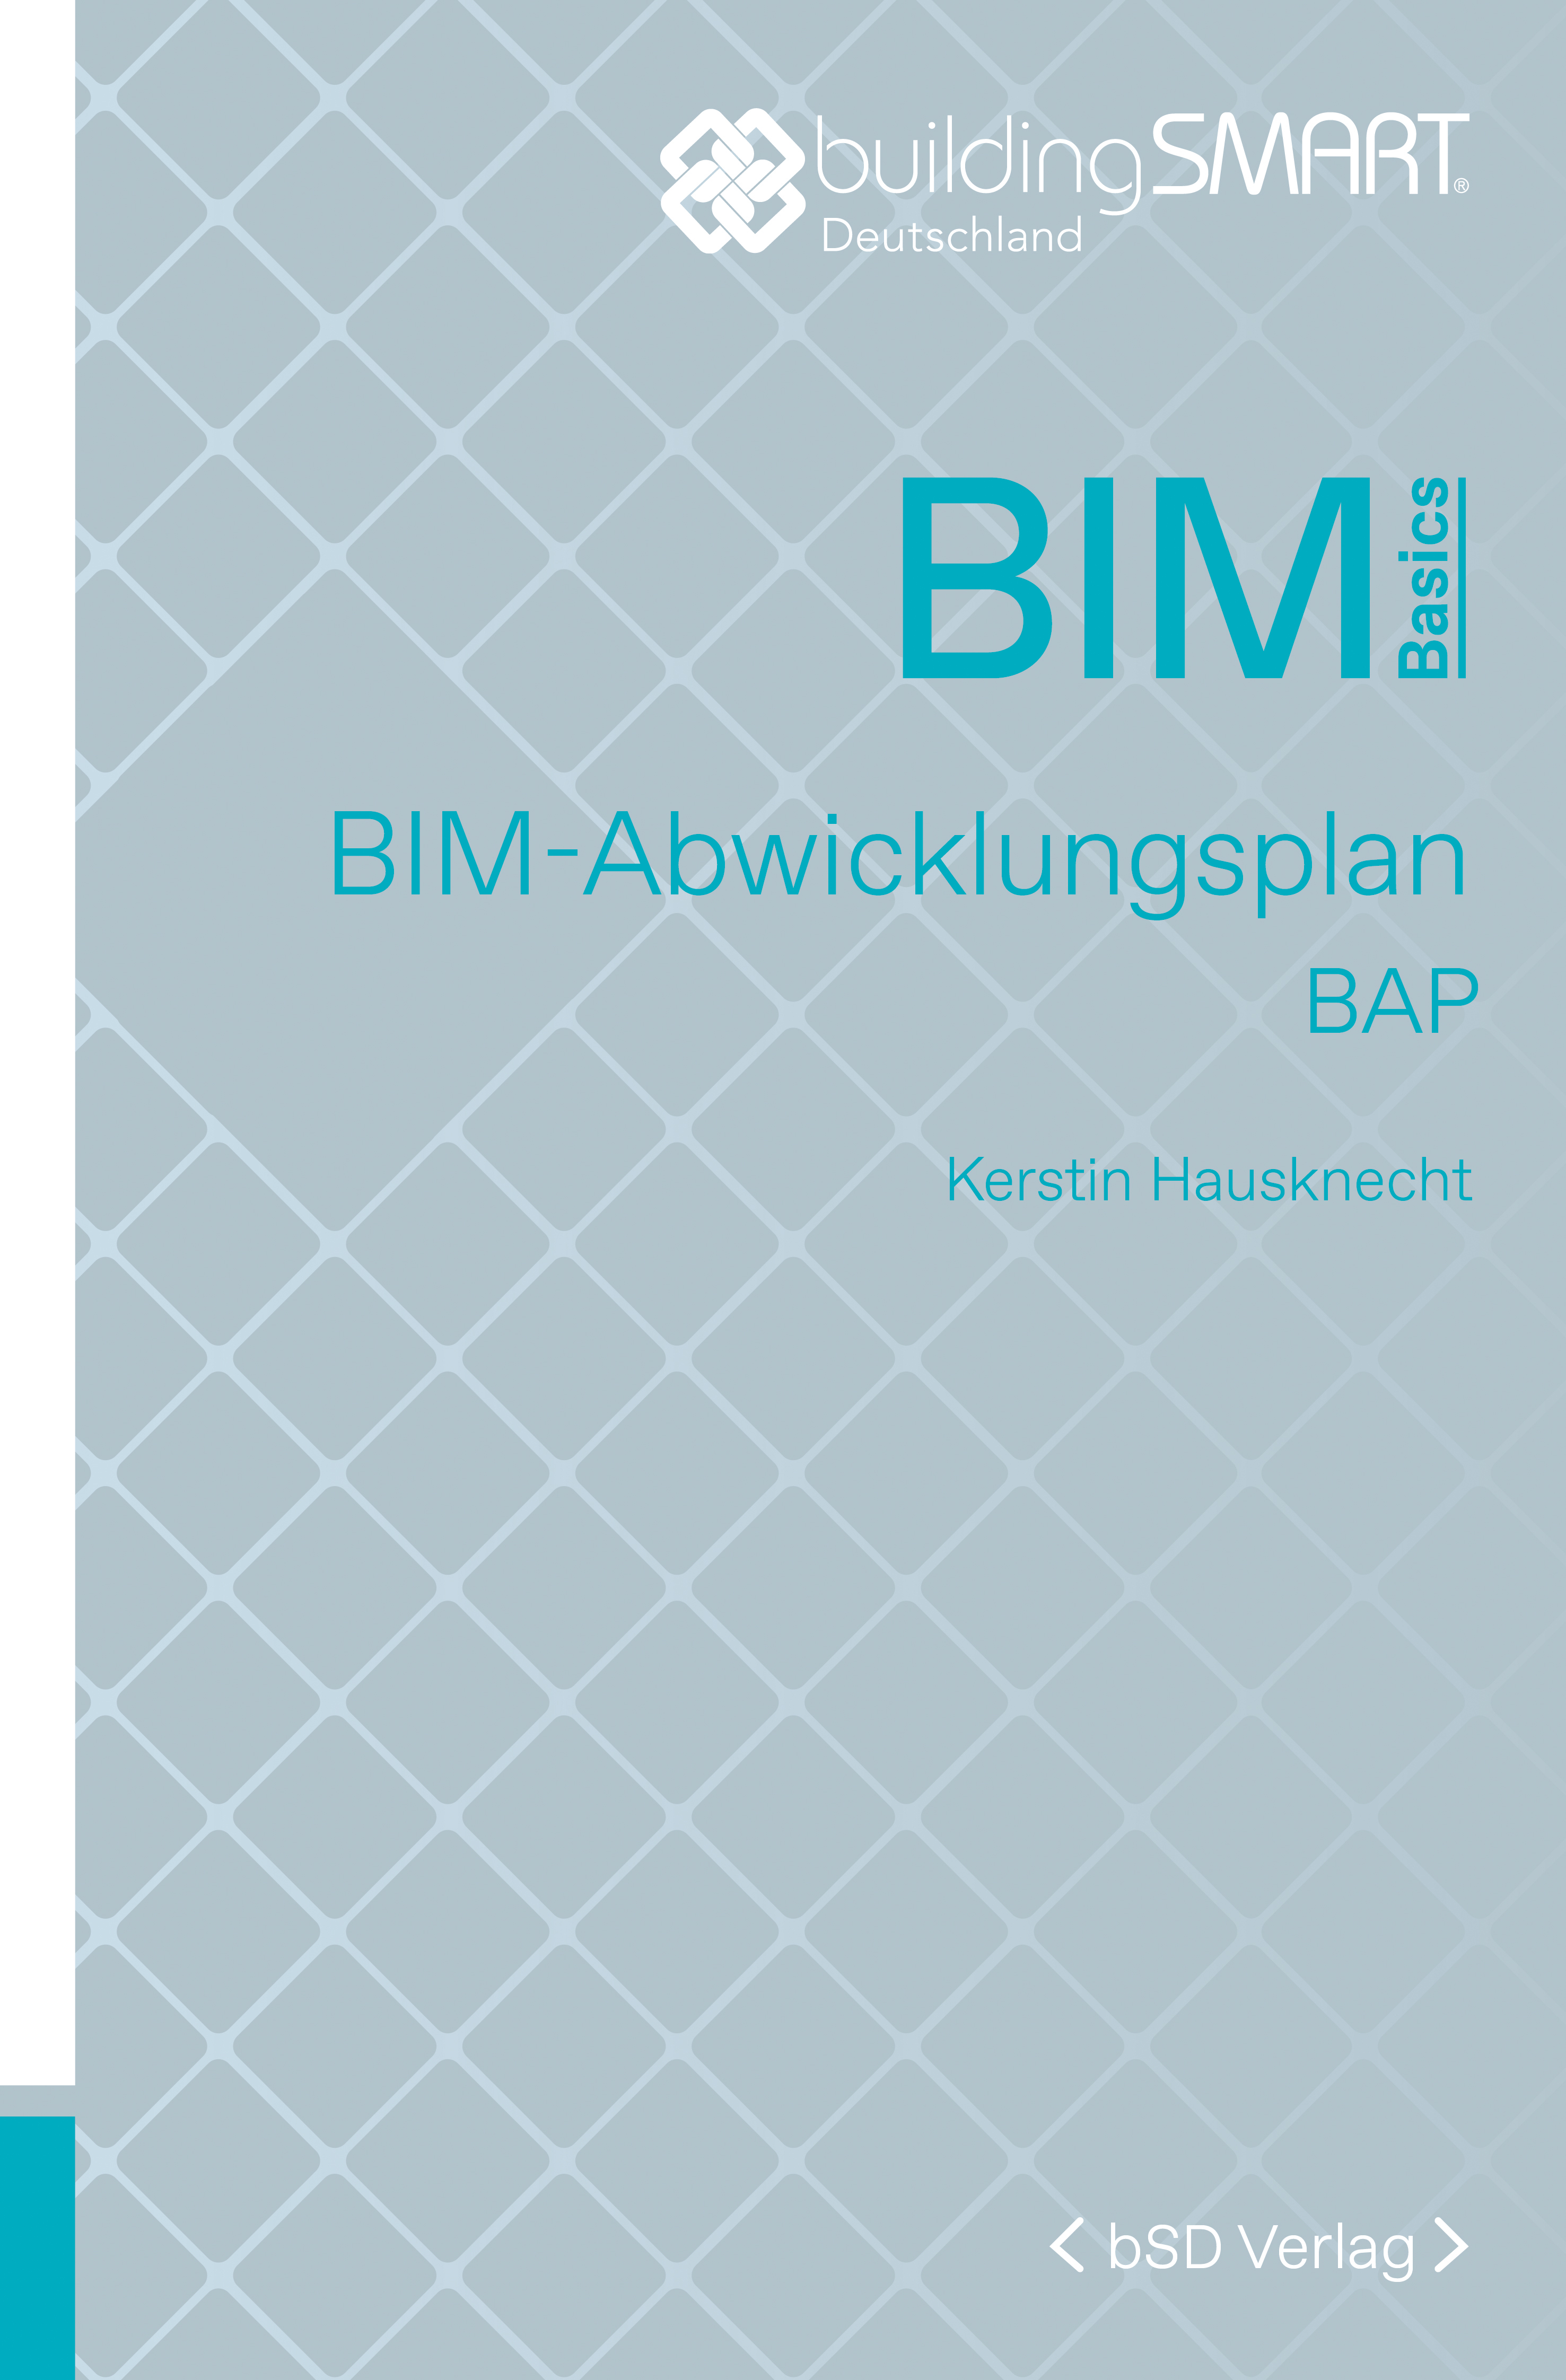 bSD Verlag/BIM Basics: BIM-Abwicklungsplan